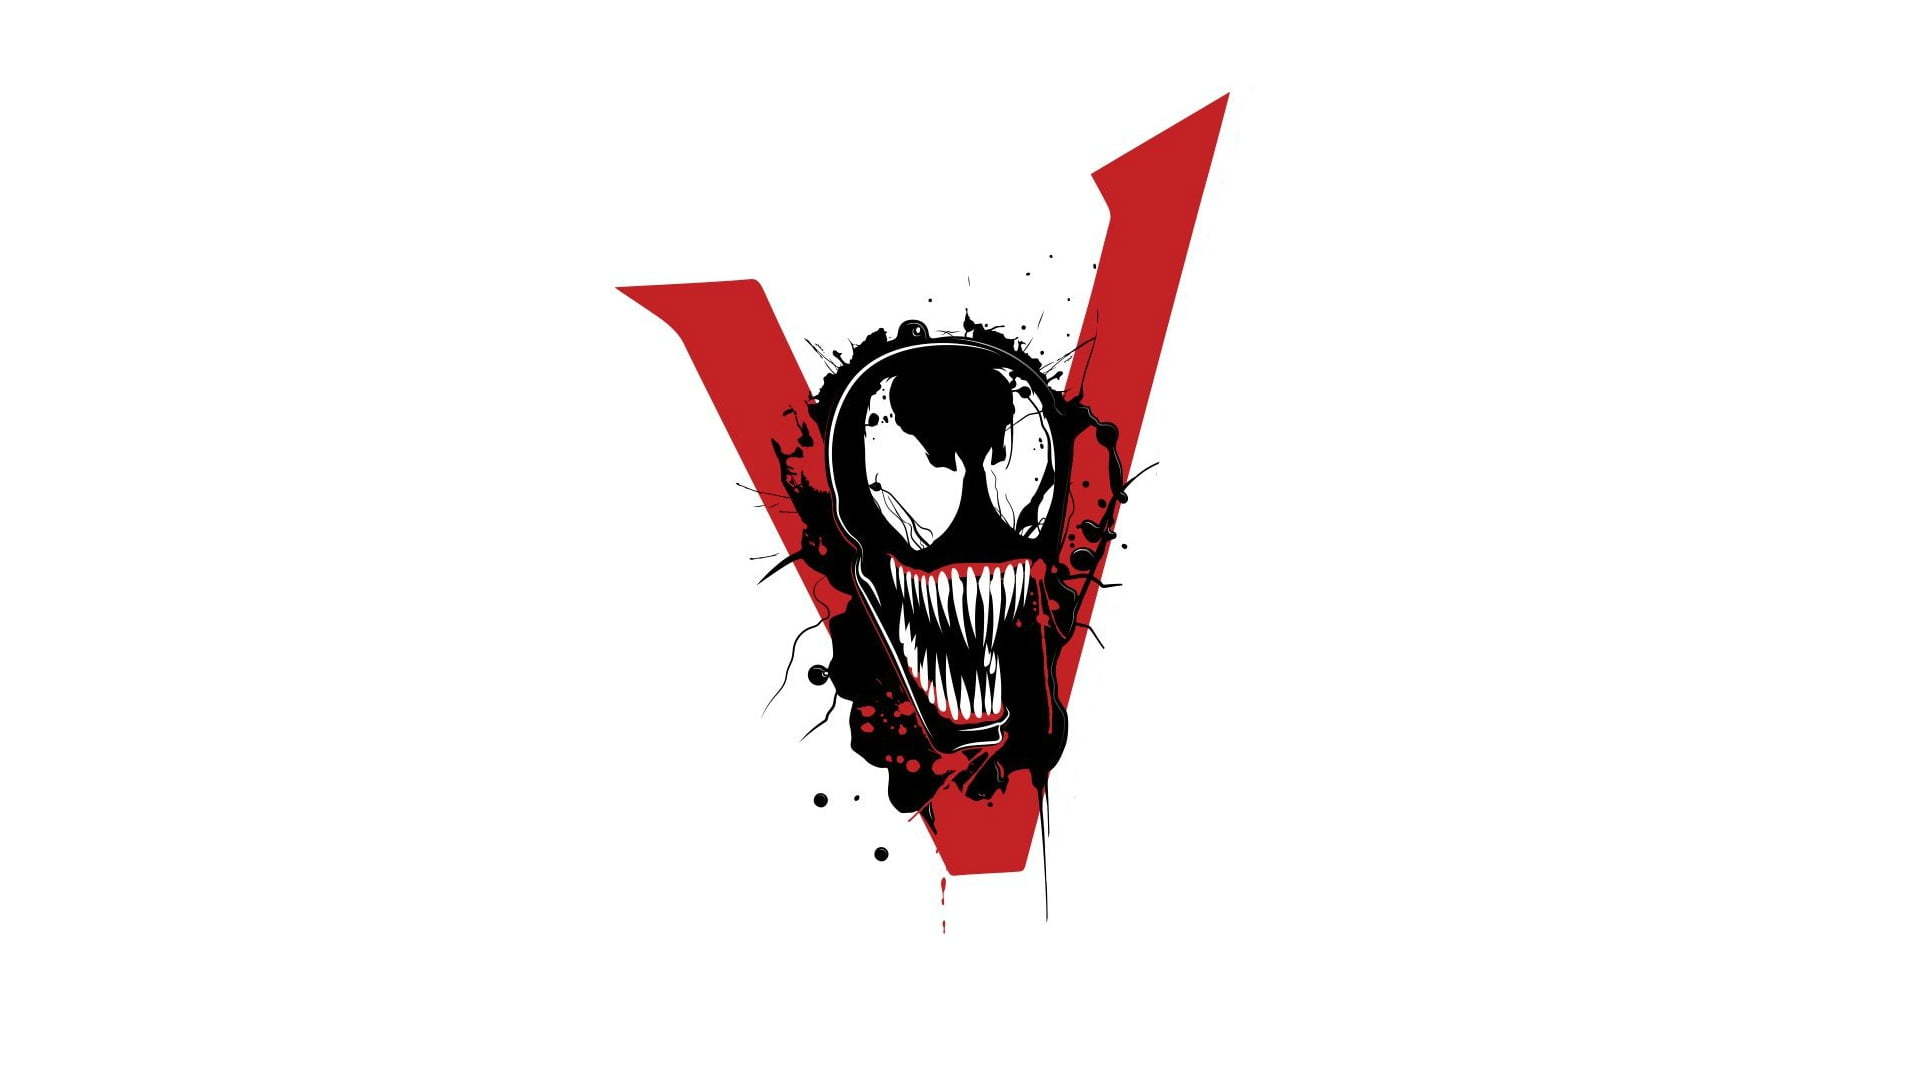 Venom illustration, background, Sony, Logo, 2018, MARVEL, we are #venom